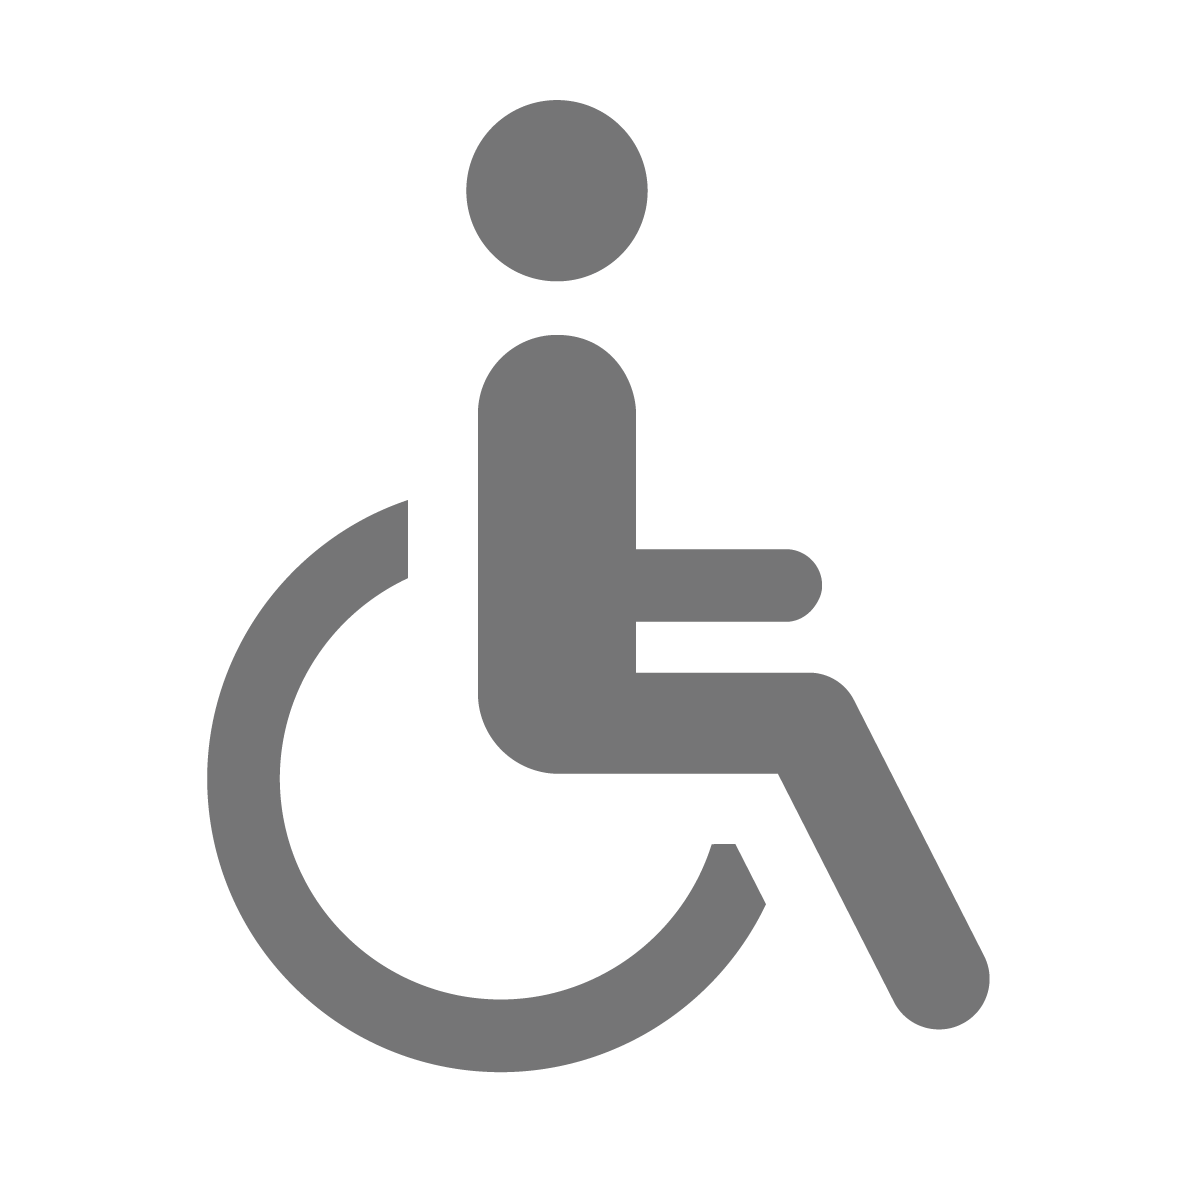 Drempelvrij voor rolstoelgebruikers - RECO Indoorlift huren